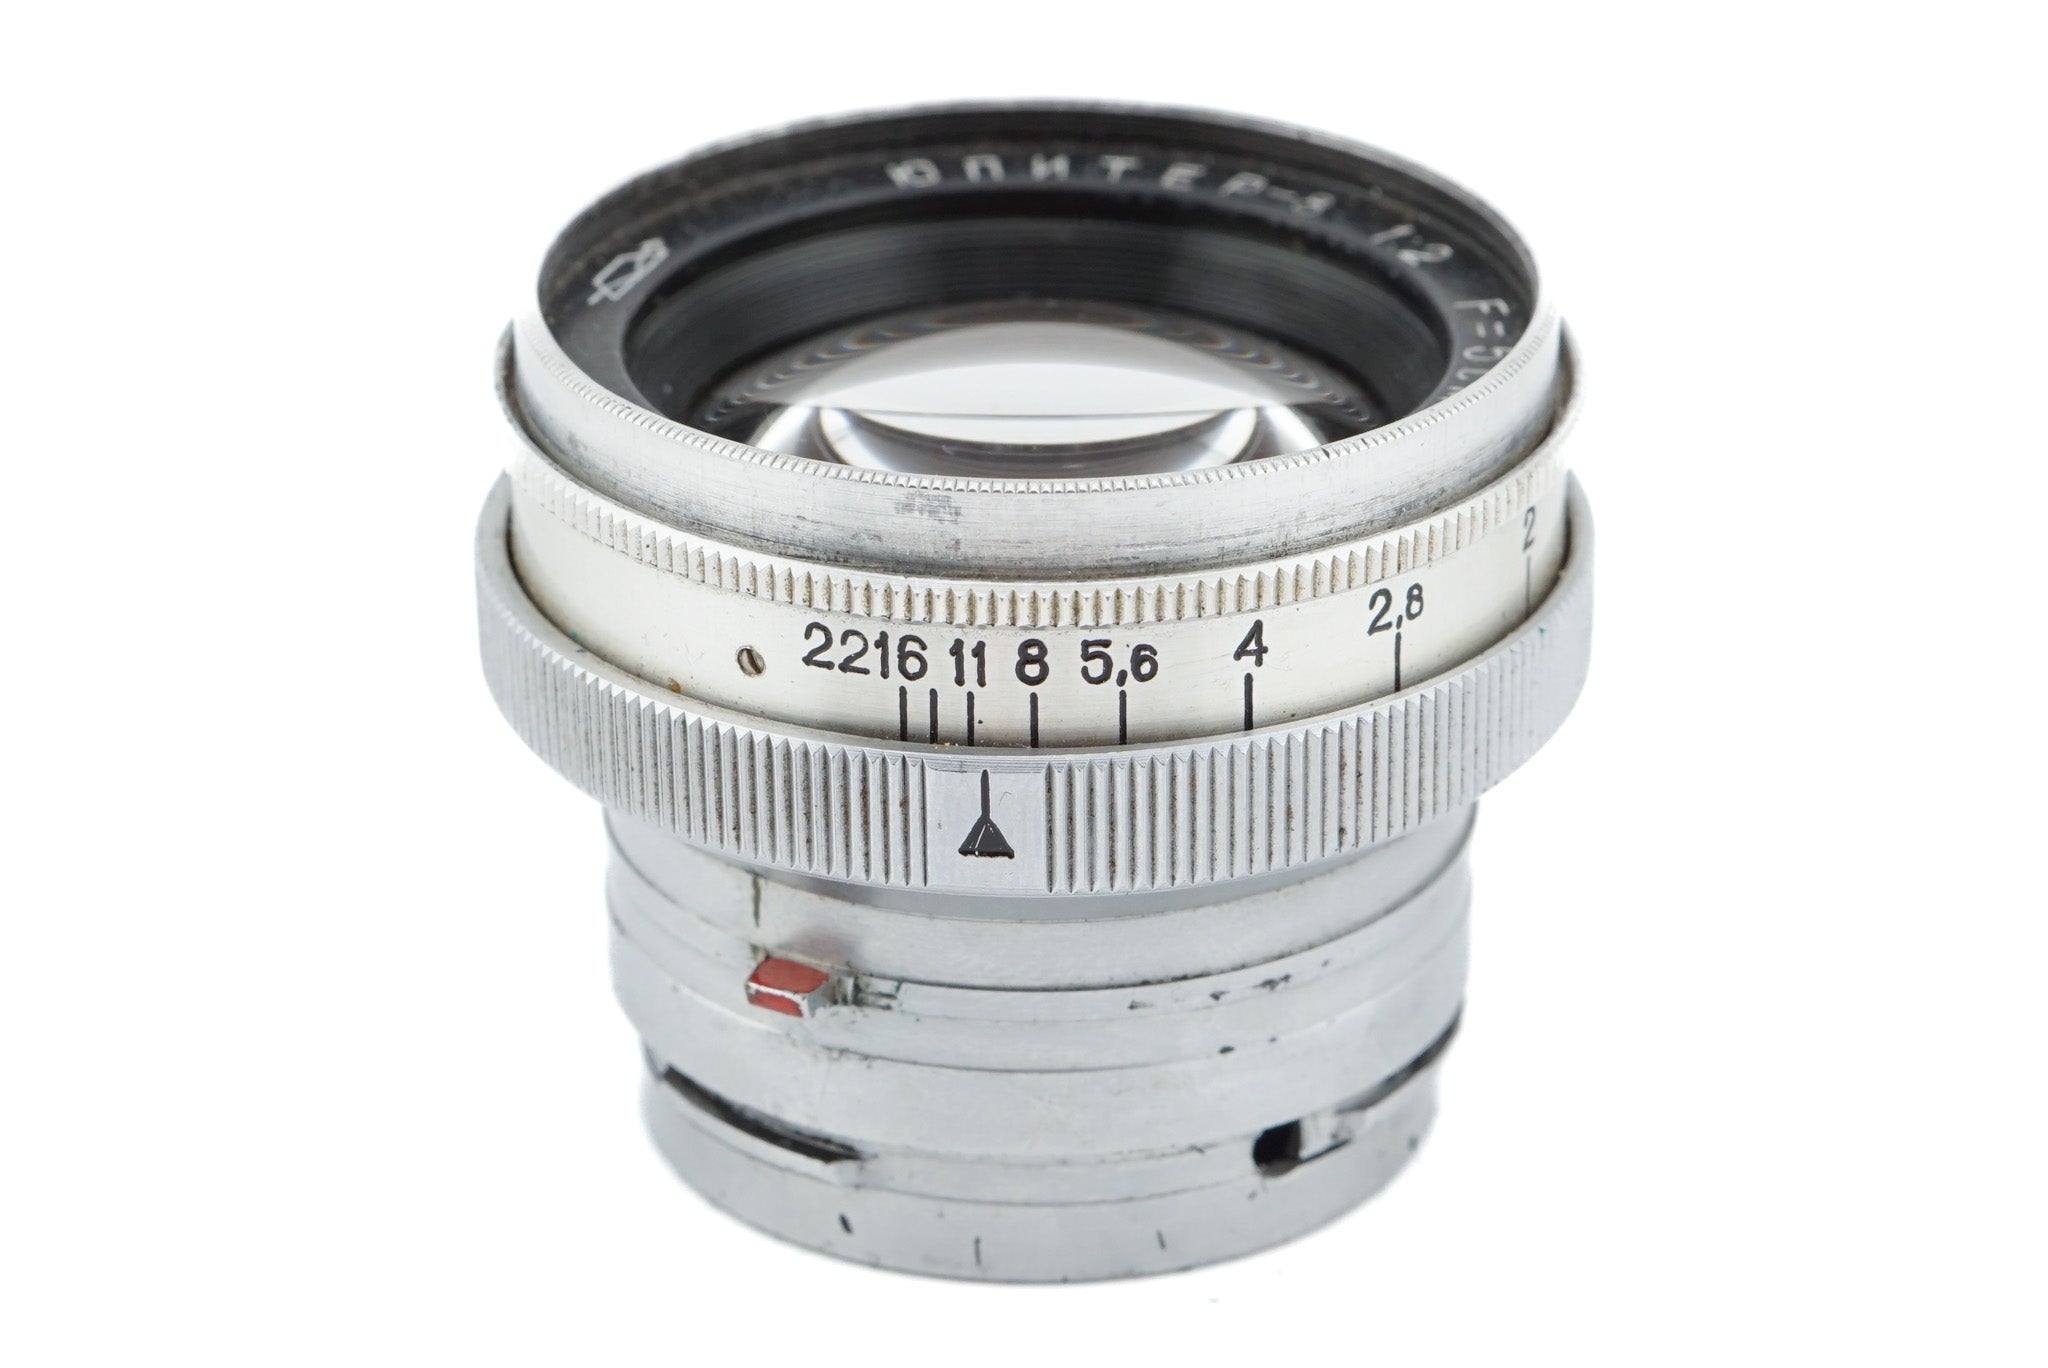 Jupiter 50mm f2 Jupiter-8 - Lens